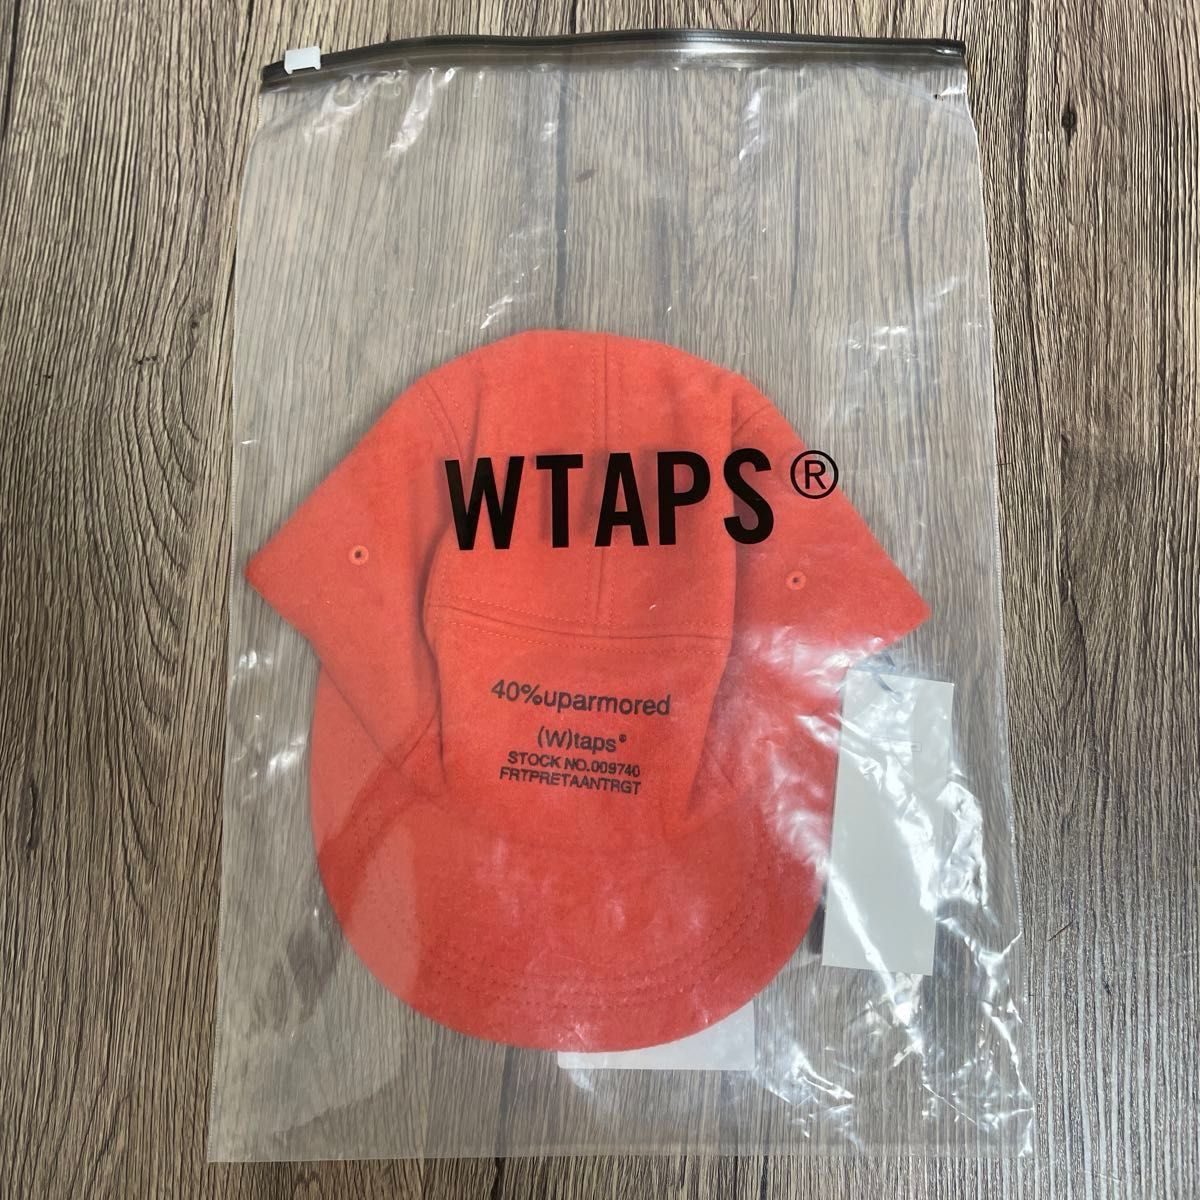 貴重アイテム！新品 Wtaps T-5 02 Cap Melton Orange